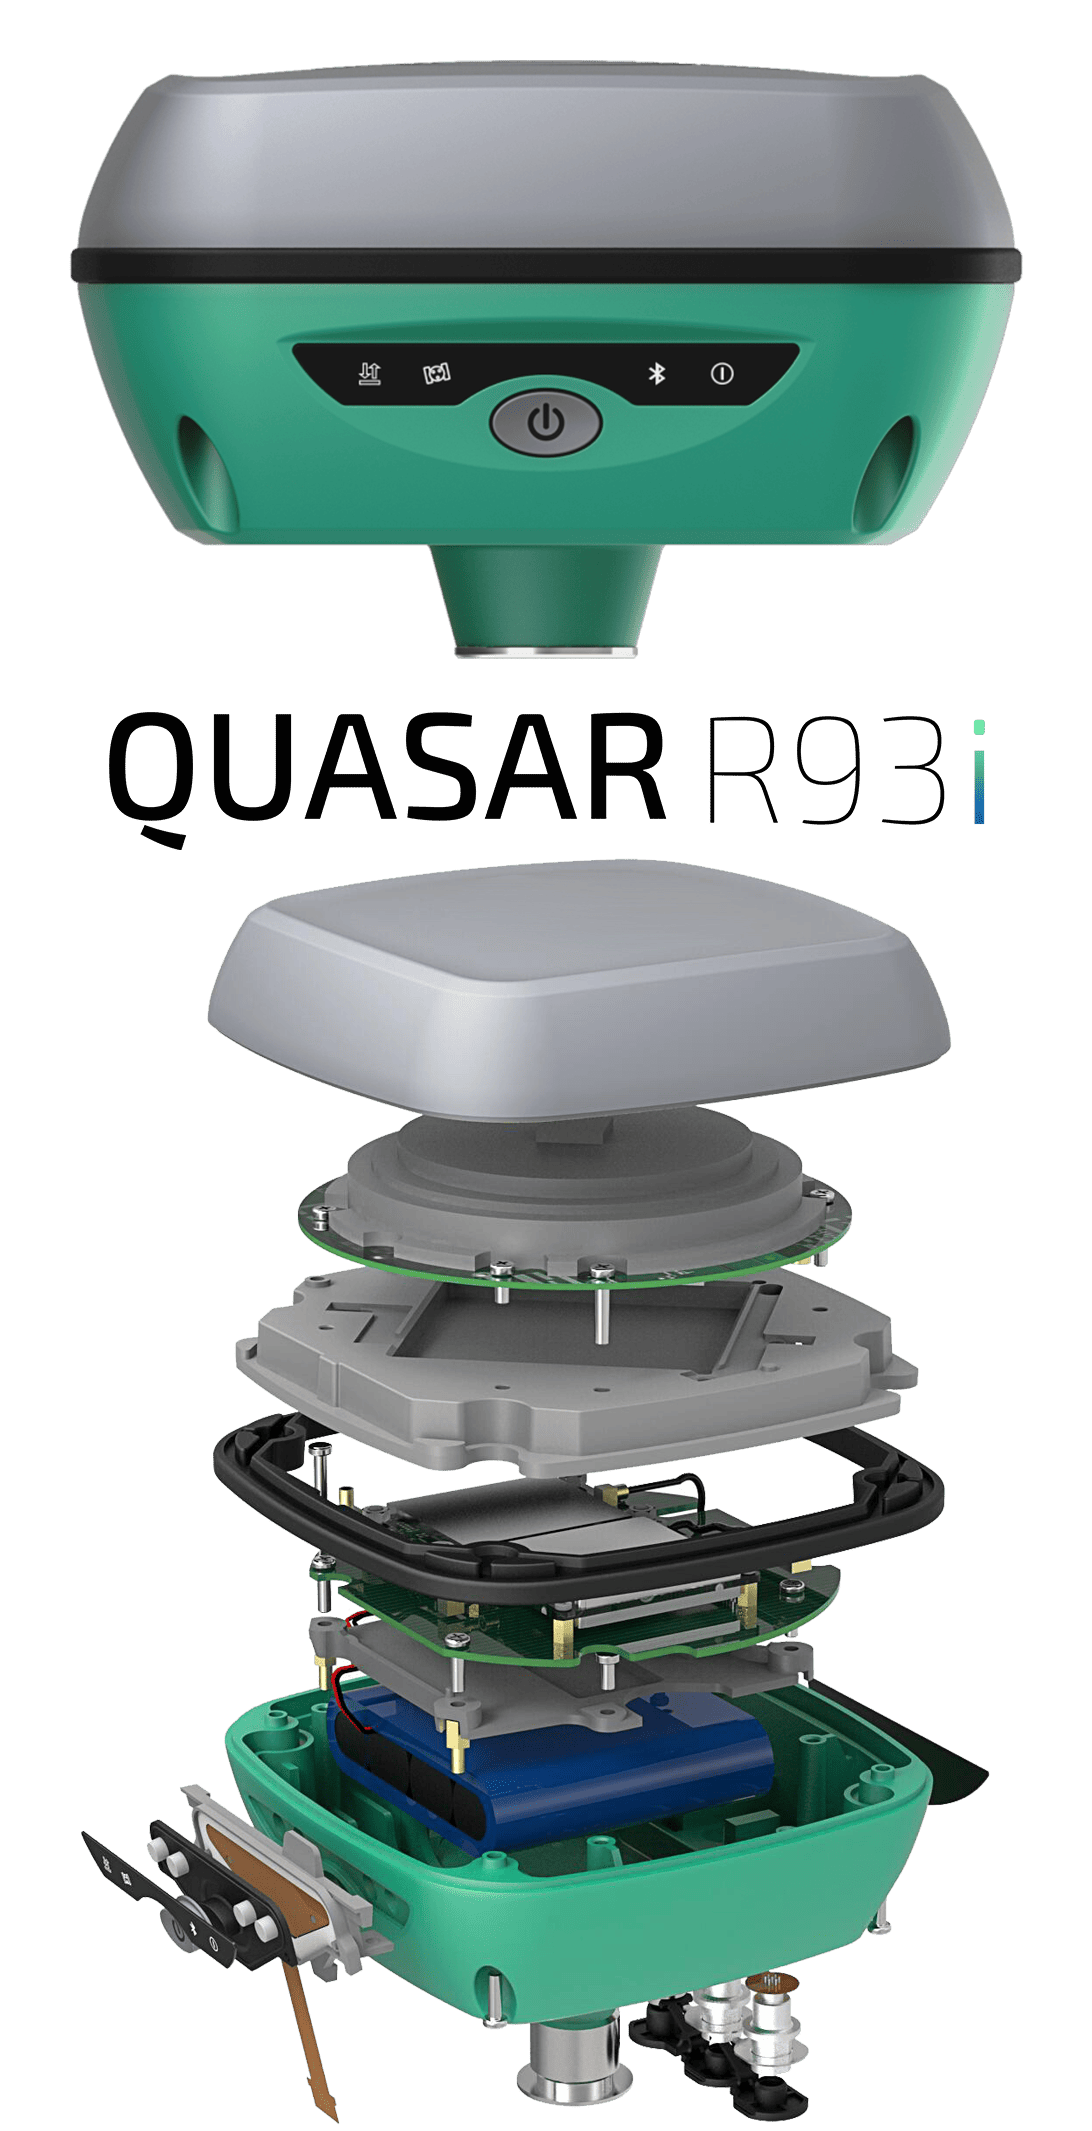 گیرنده مولتی فرکانس روید مدل RUIDE QUASAR R93i 